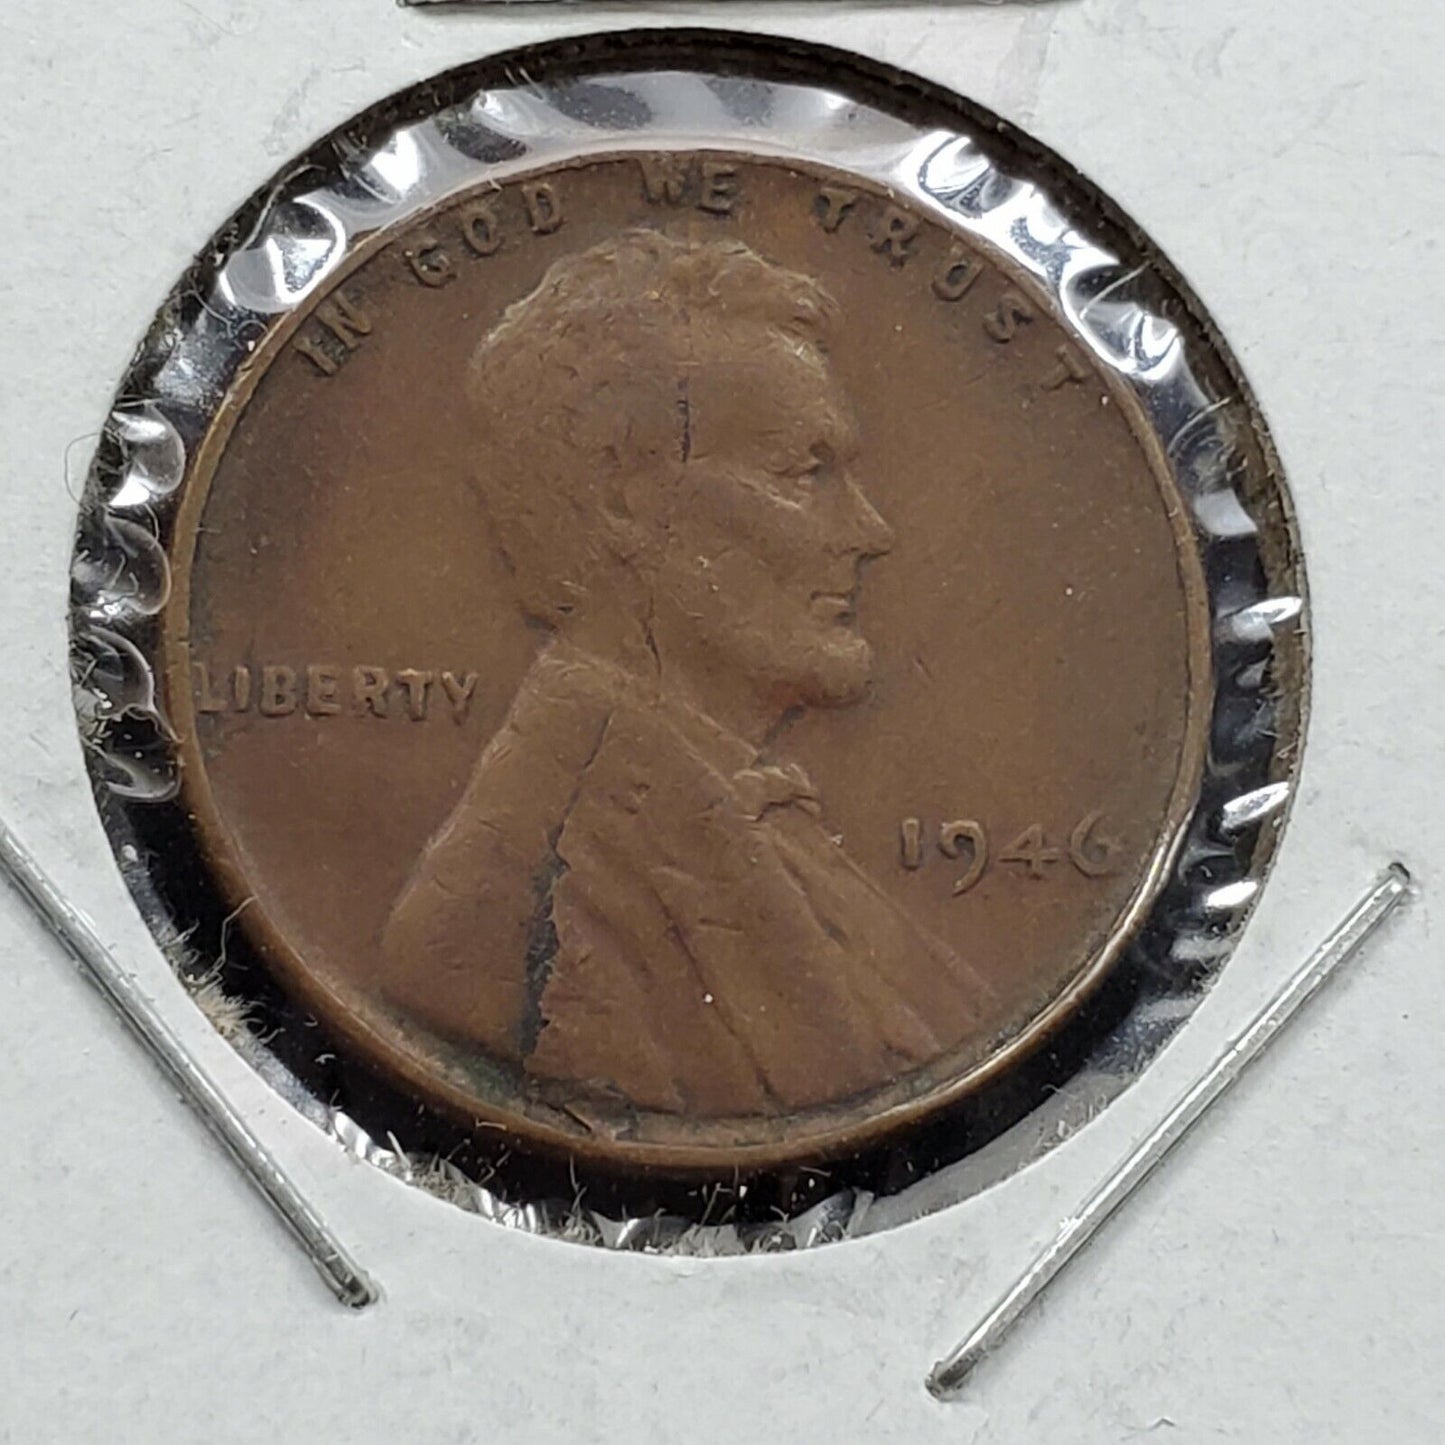 1946 P 1c Lincoln Wheat Cent Error Coin Major Laminated Planchet WW2 Era 2